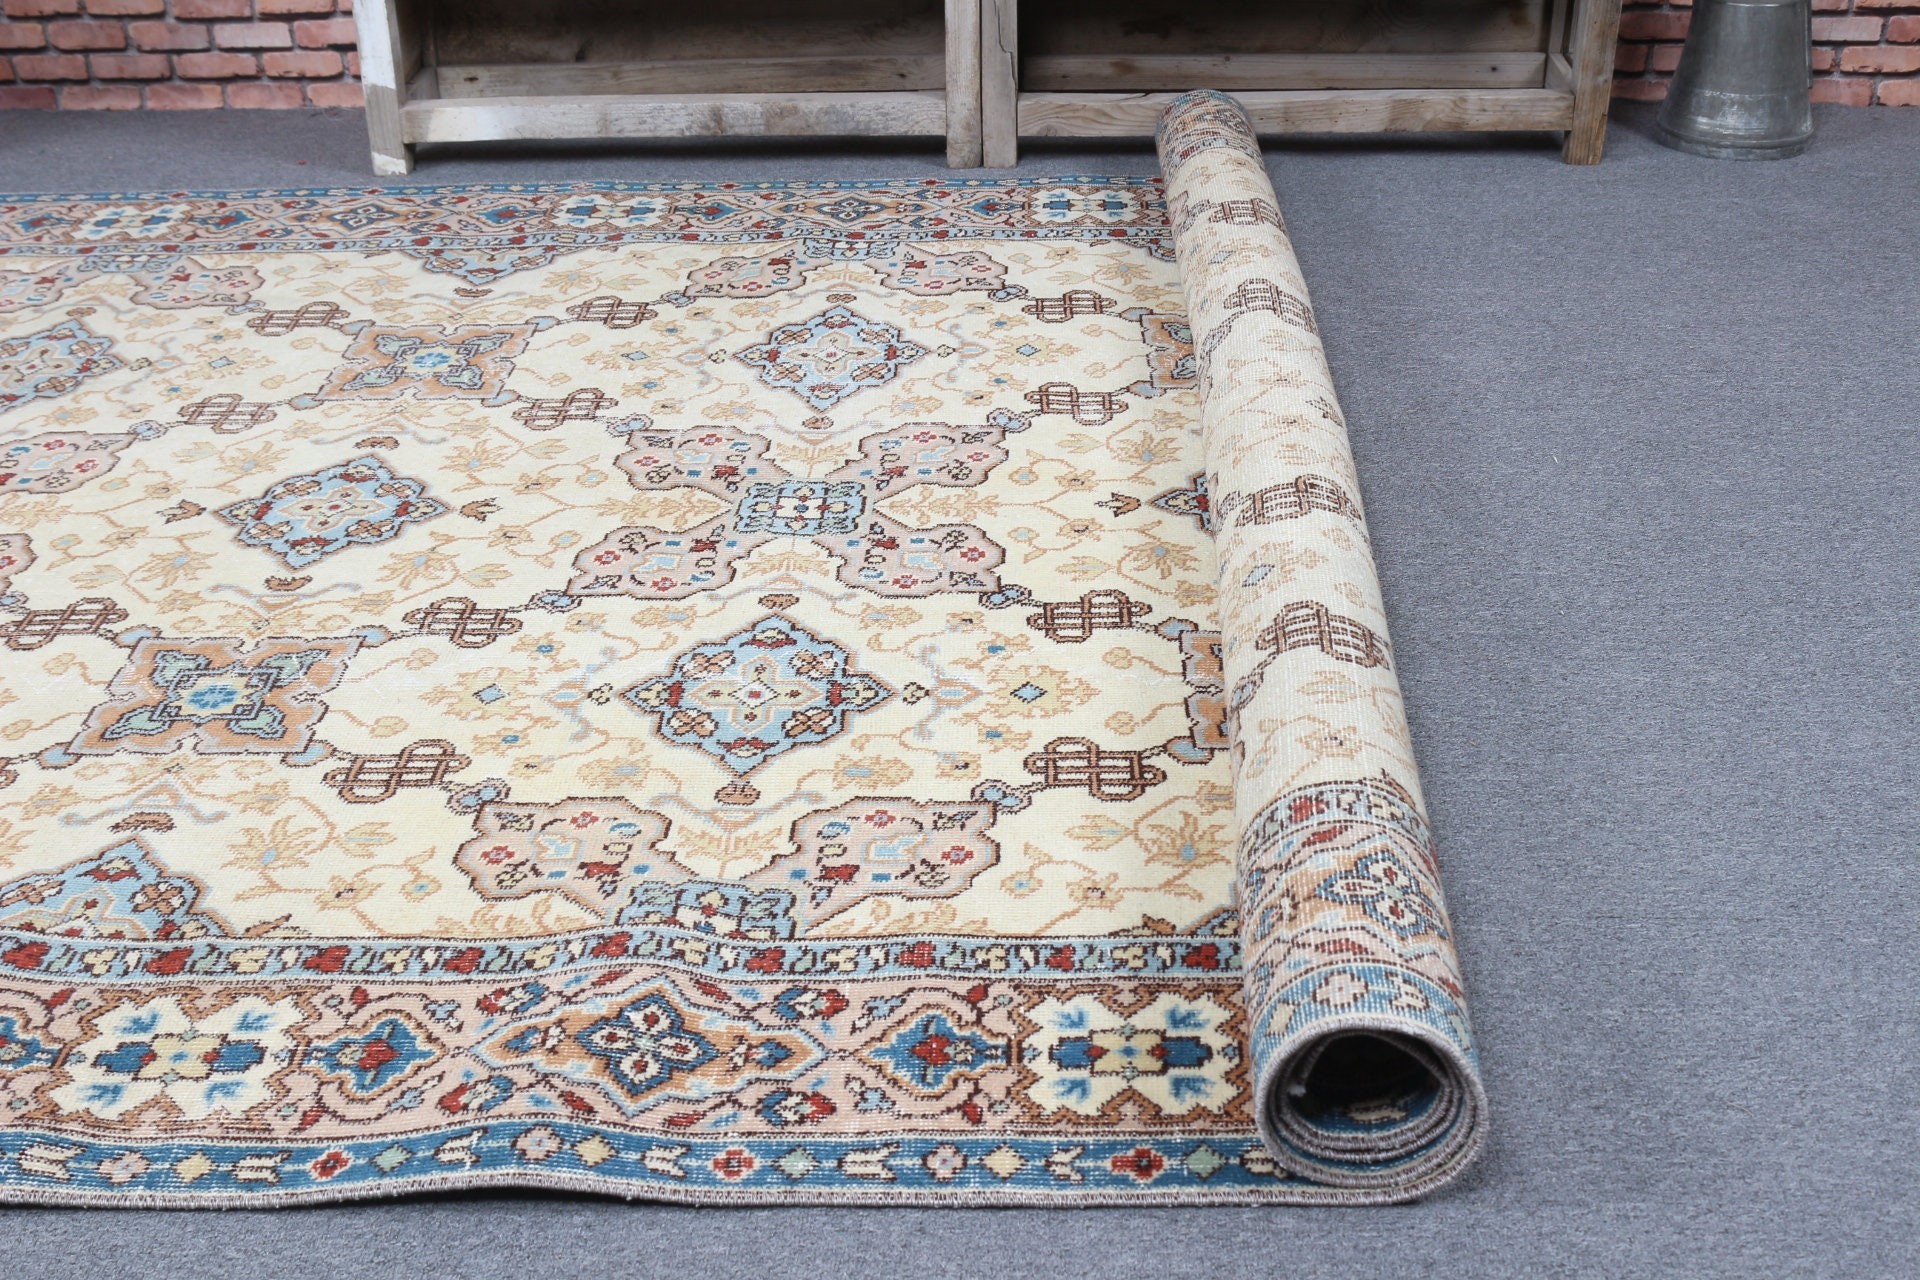 Floor Rug, Turkish Rugs, Beige  6.4x10.1 ft Large Rugs, Bedroom Rug, Home Decor Rugs, Living Room Rug, Art Rugs, Vintage Rugs